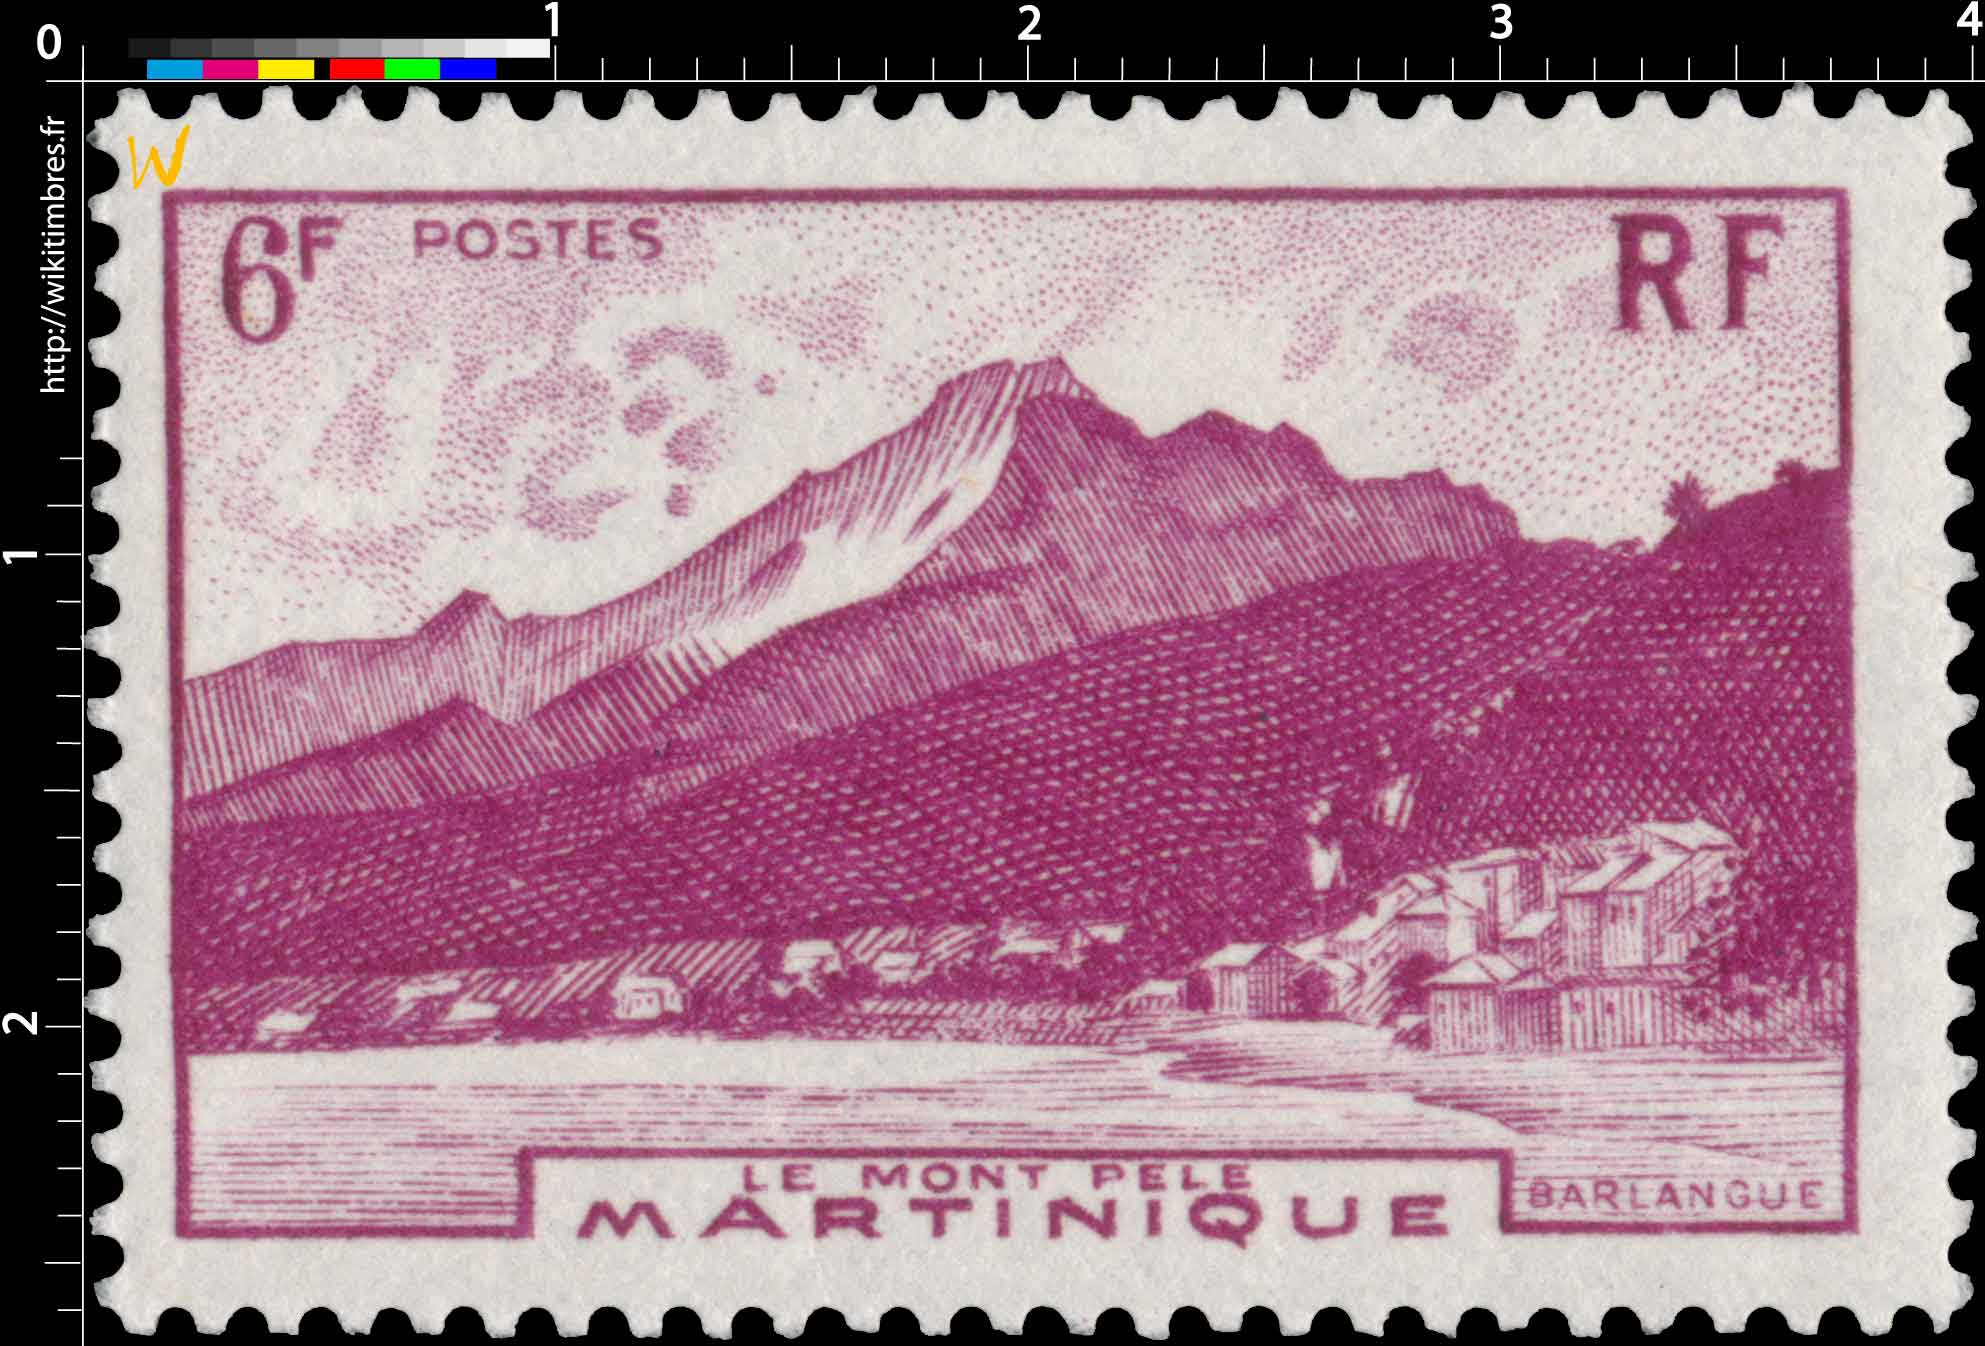 Martinique - Le mont Pelé